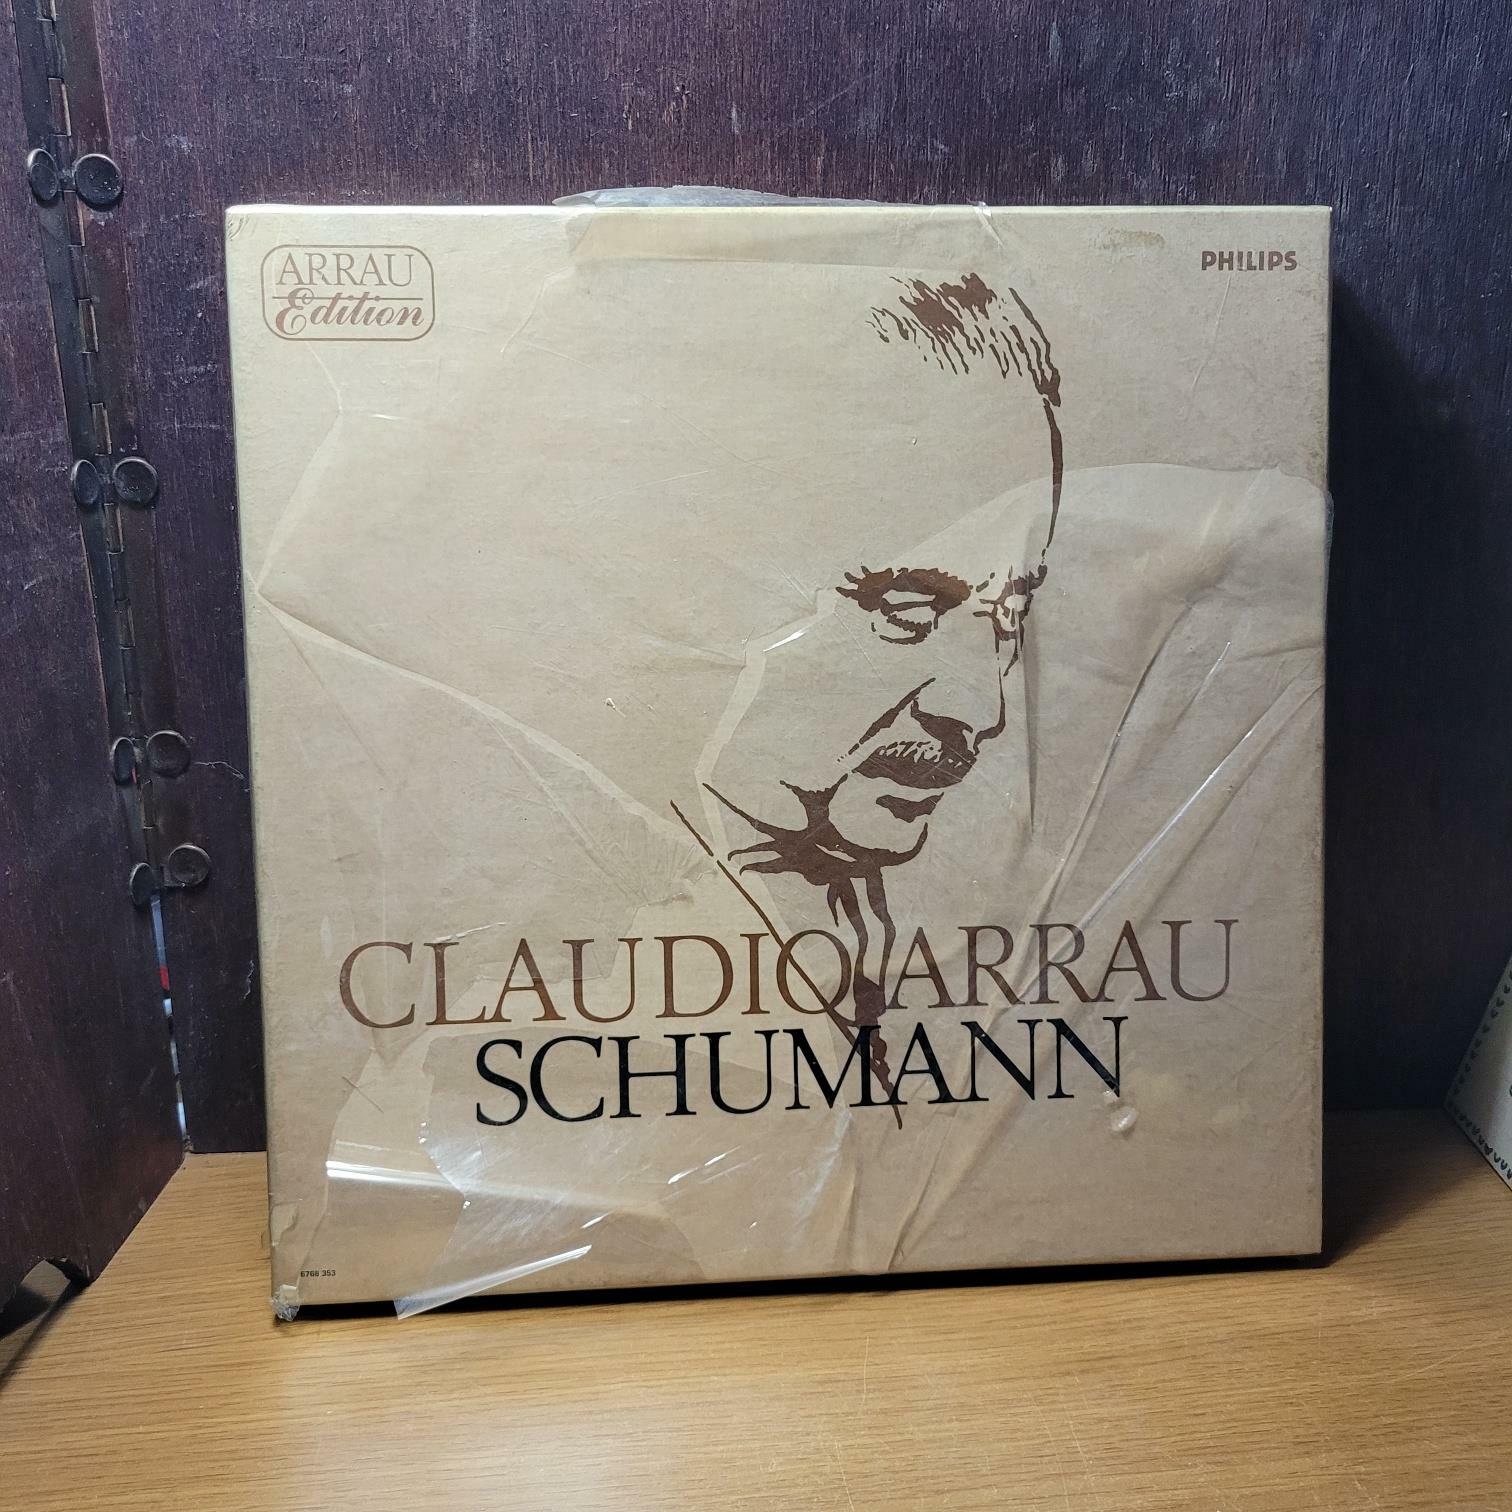 [중고] PHILIPS) Arrau Edition Claudio Arrau Schumann 클라우디오 아라우 슈만 [상급/실사진 참고]